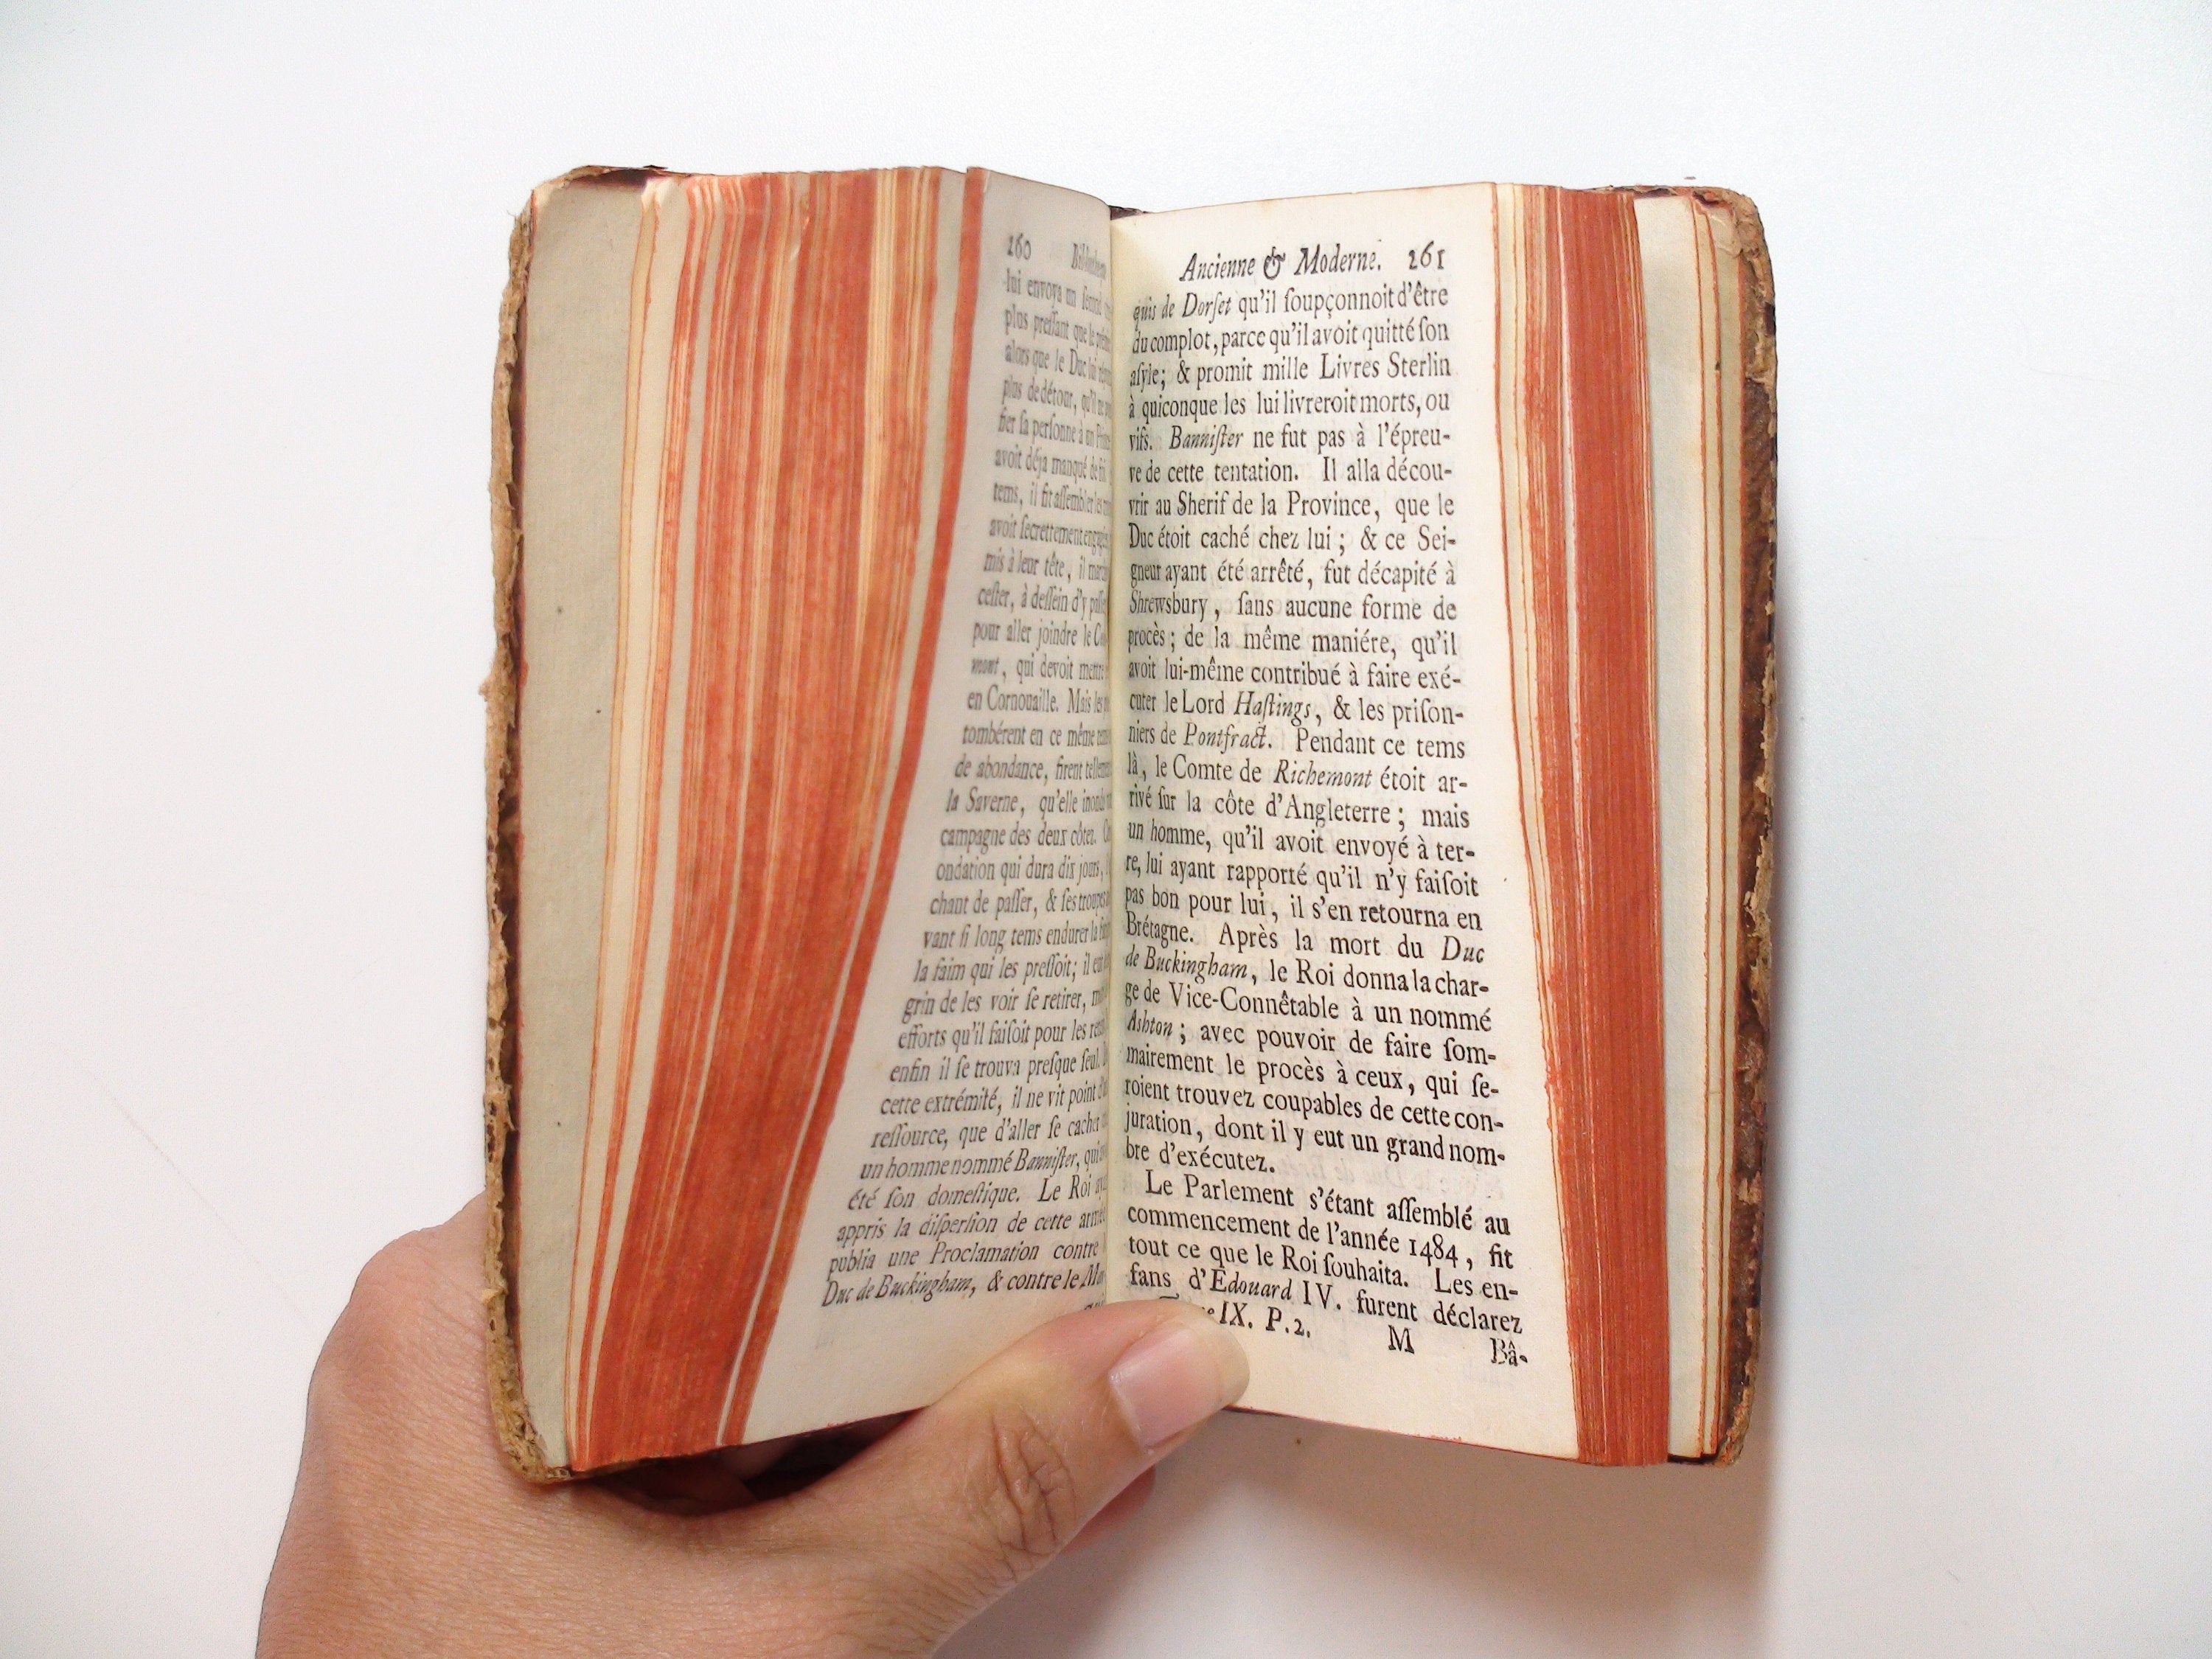 Bibliotheque Ancienne et Moderne, Jean le Clerc, Vol IX, Leather, Rare, 1718